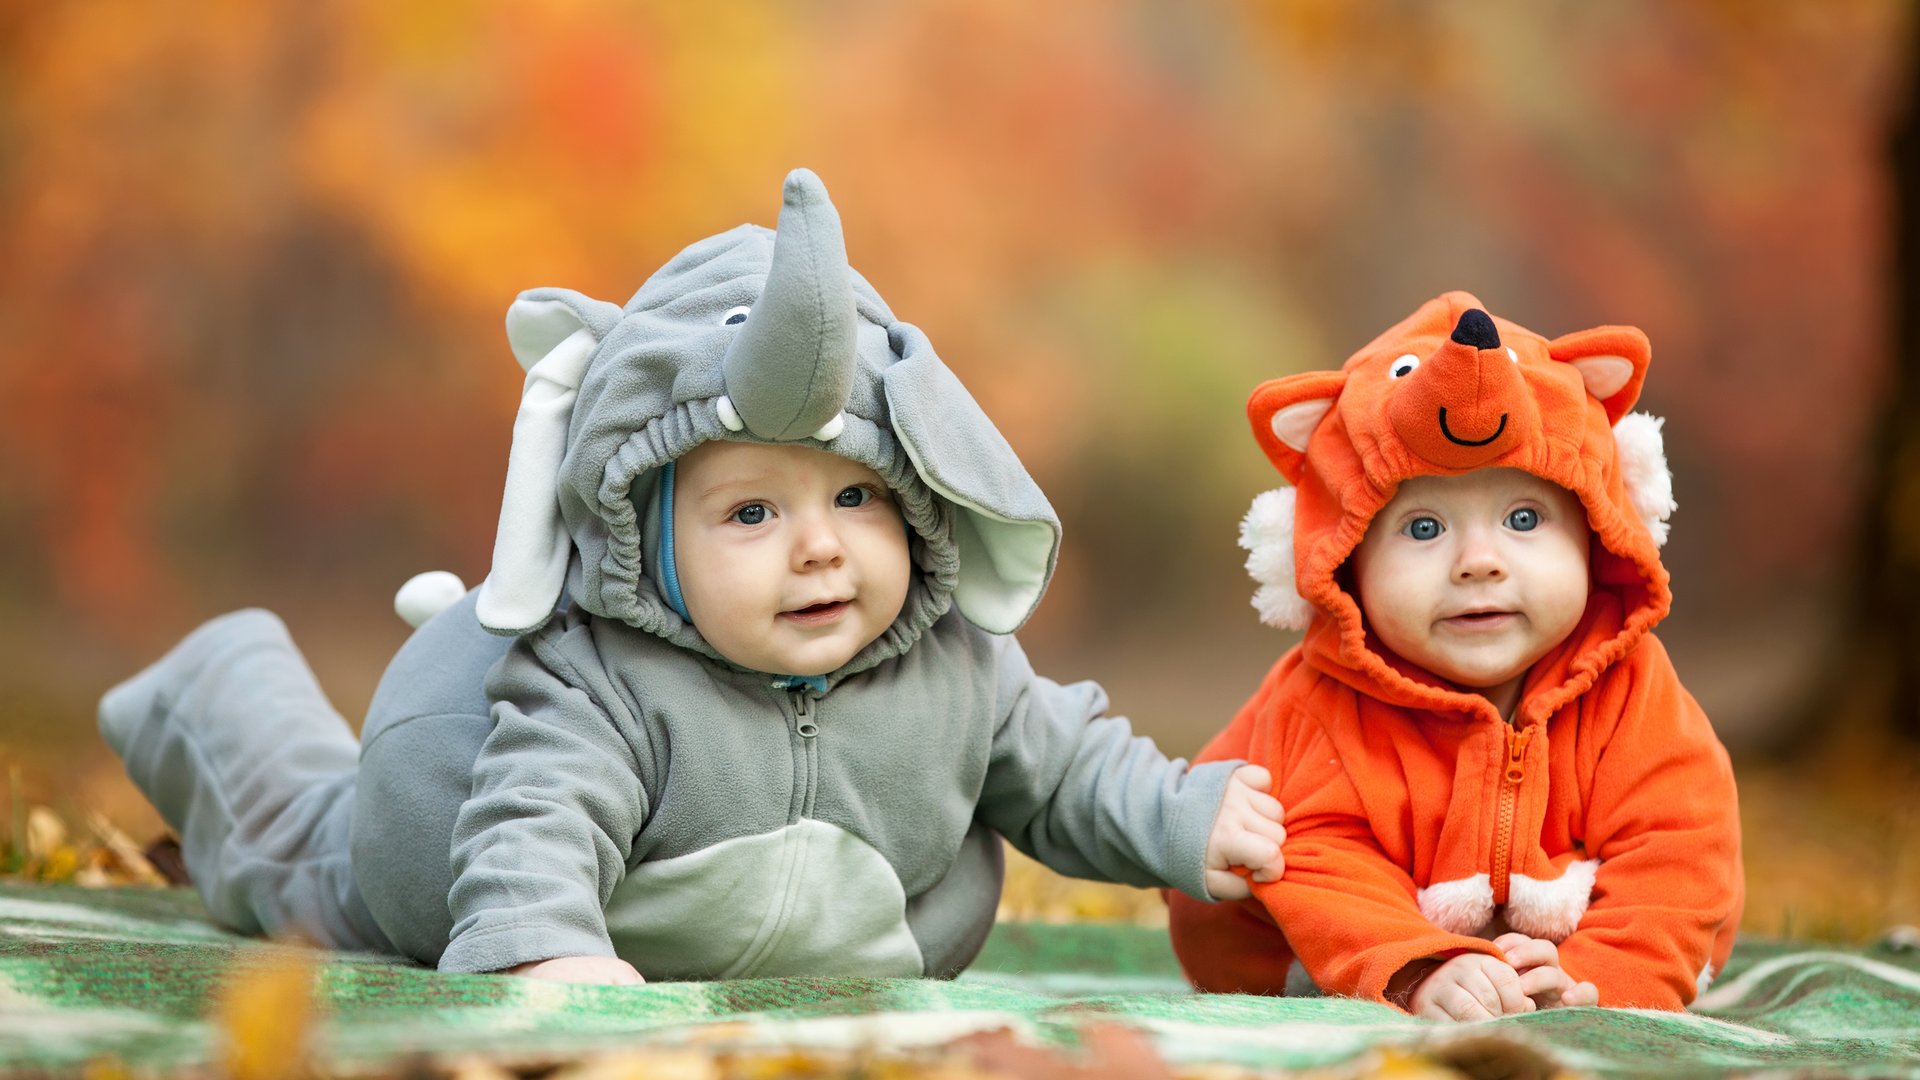 Allence Baby Halloween Kleidung,Niedlich Kleinkind Neugeborenes Baby Jungen Mädchen Halloween Cosplay Kostüm Strampler Hut Bat Outfits Set